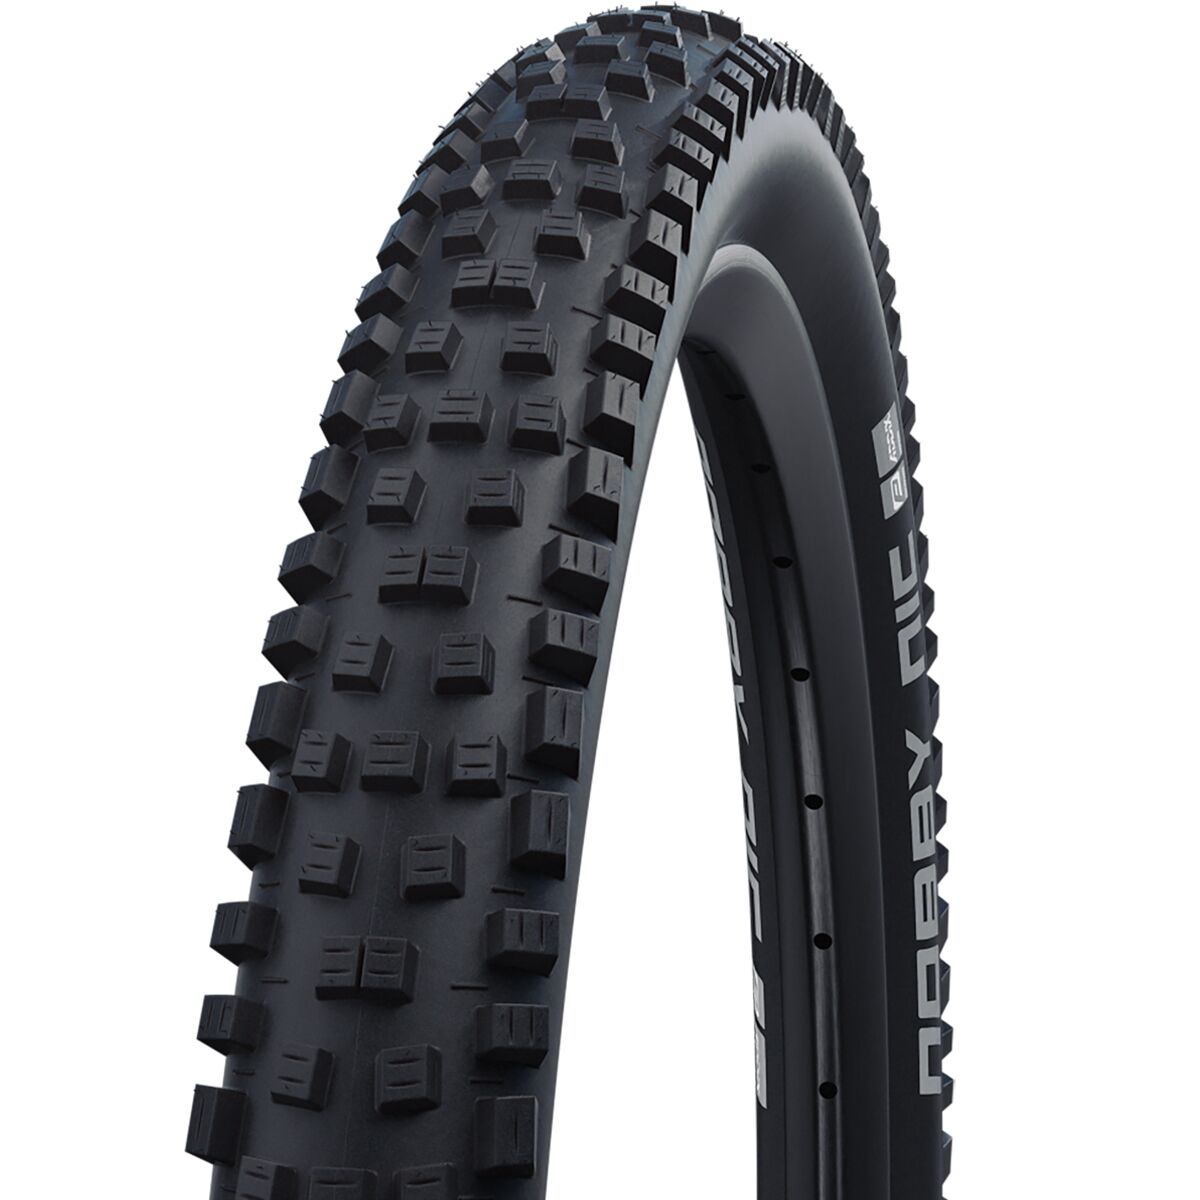  Pirelli Scorpion E-MTB R Bike Tire - 27.5 x 2.6, Tubeless,  Folding, Black : Sports & Outdoors